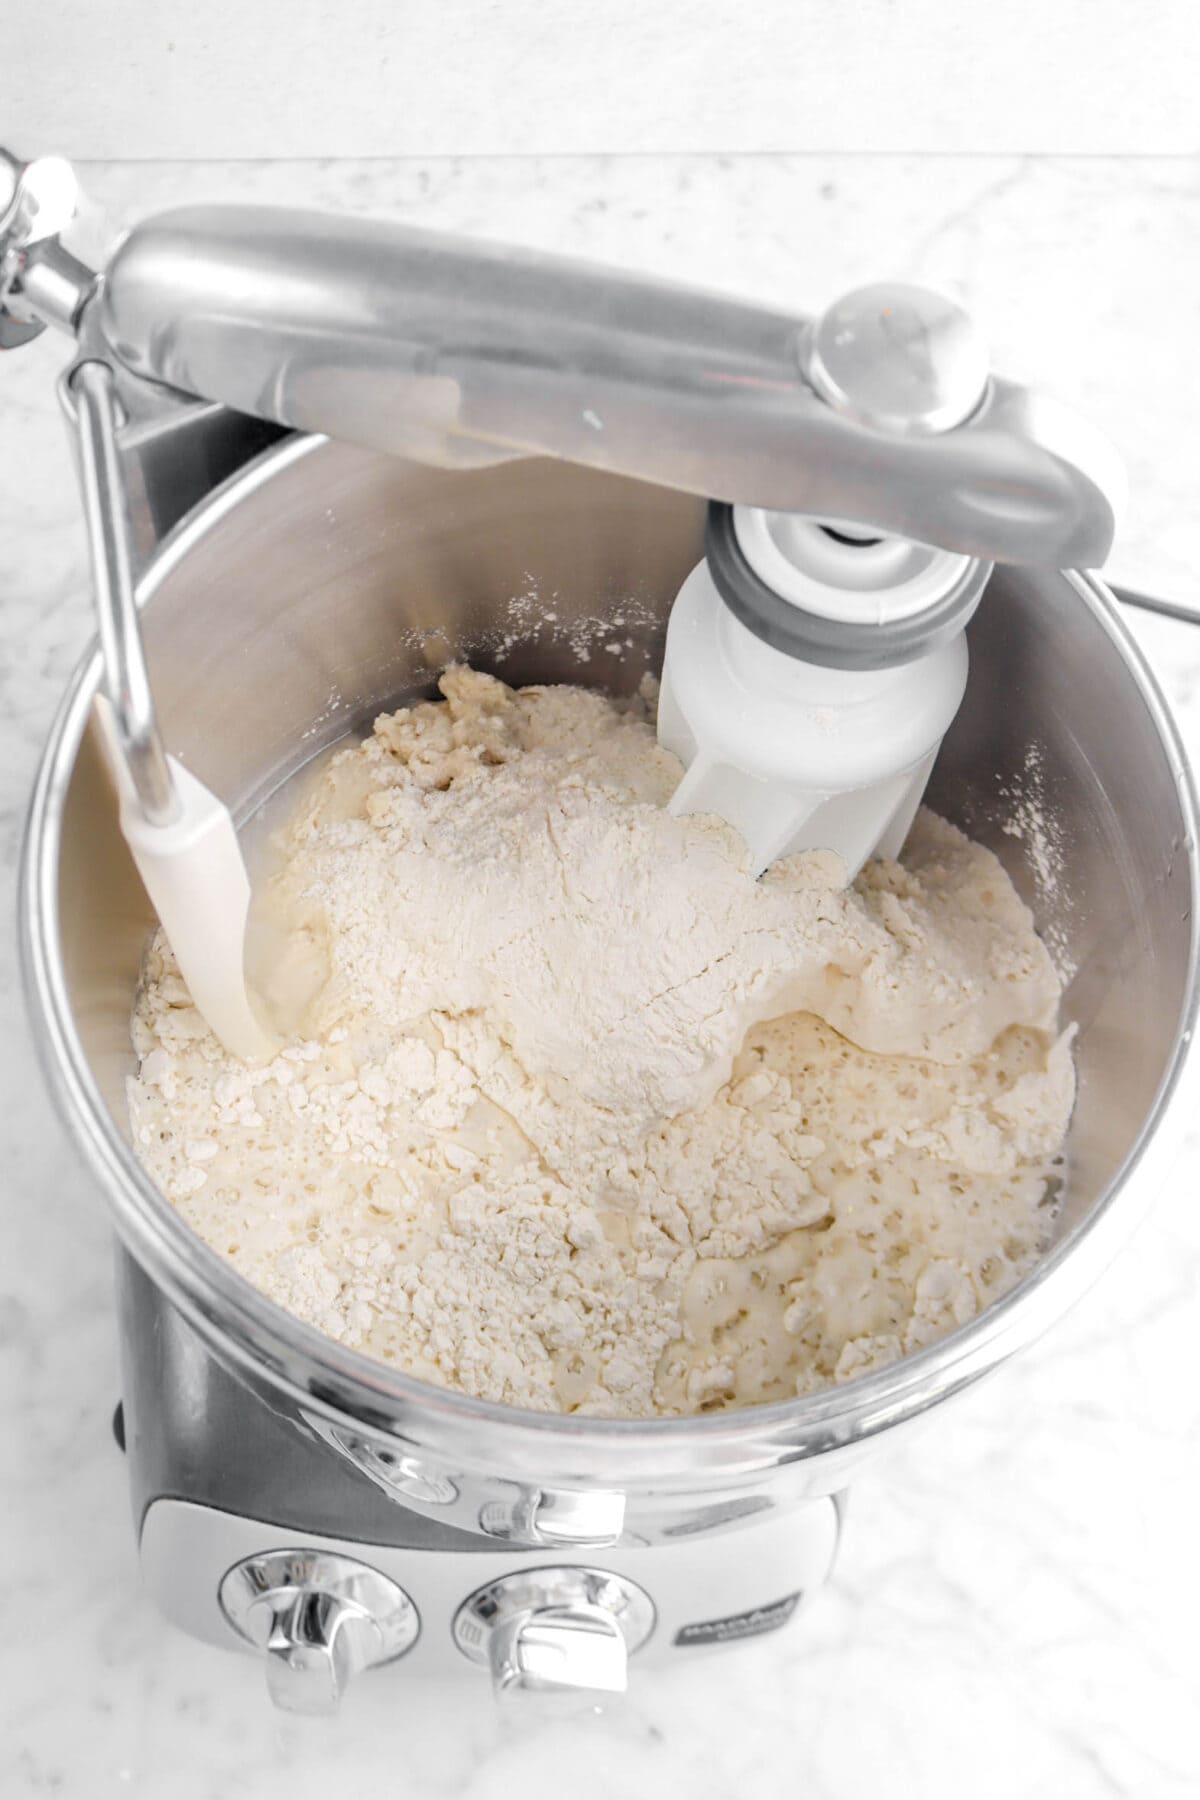 flour, water, biga, and salt in mixer bowl